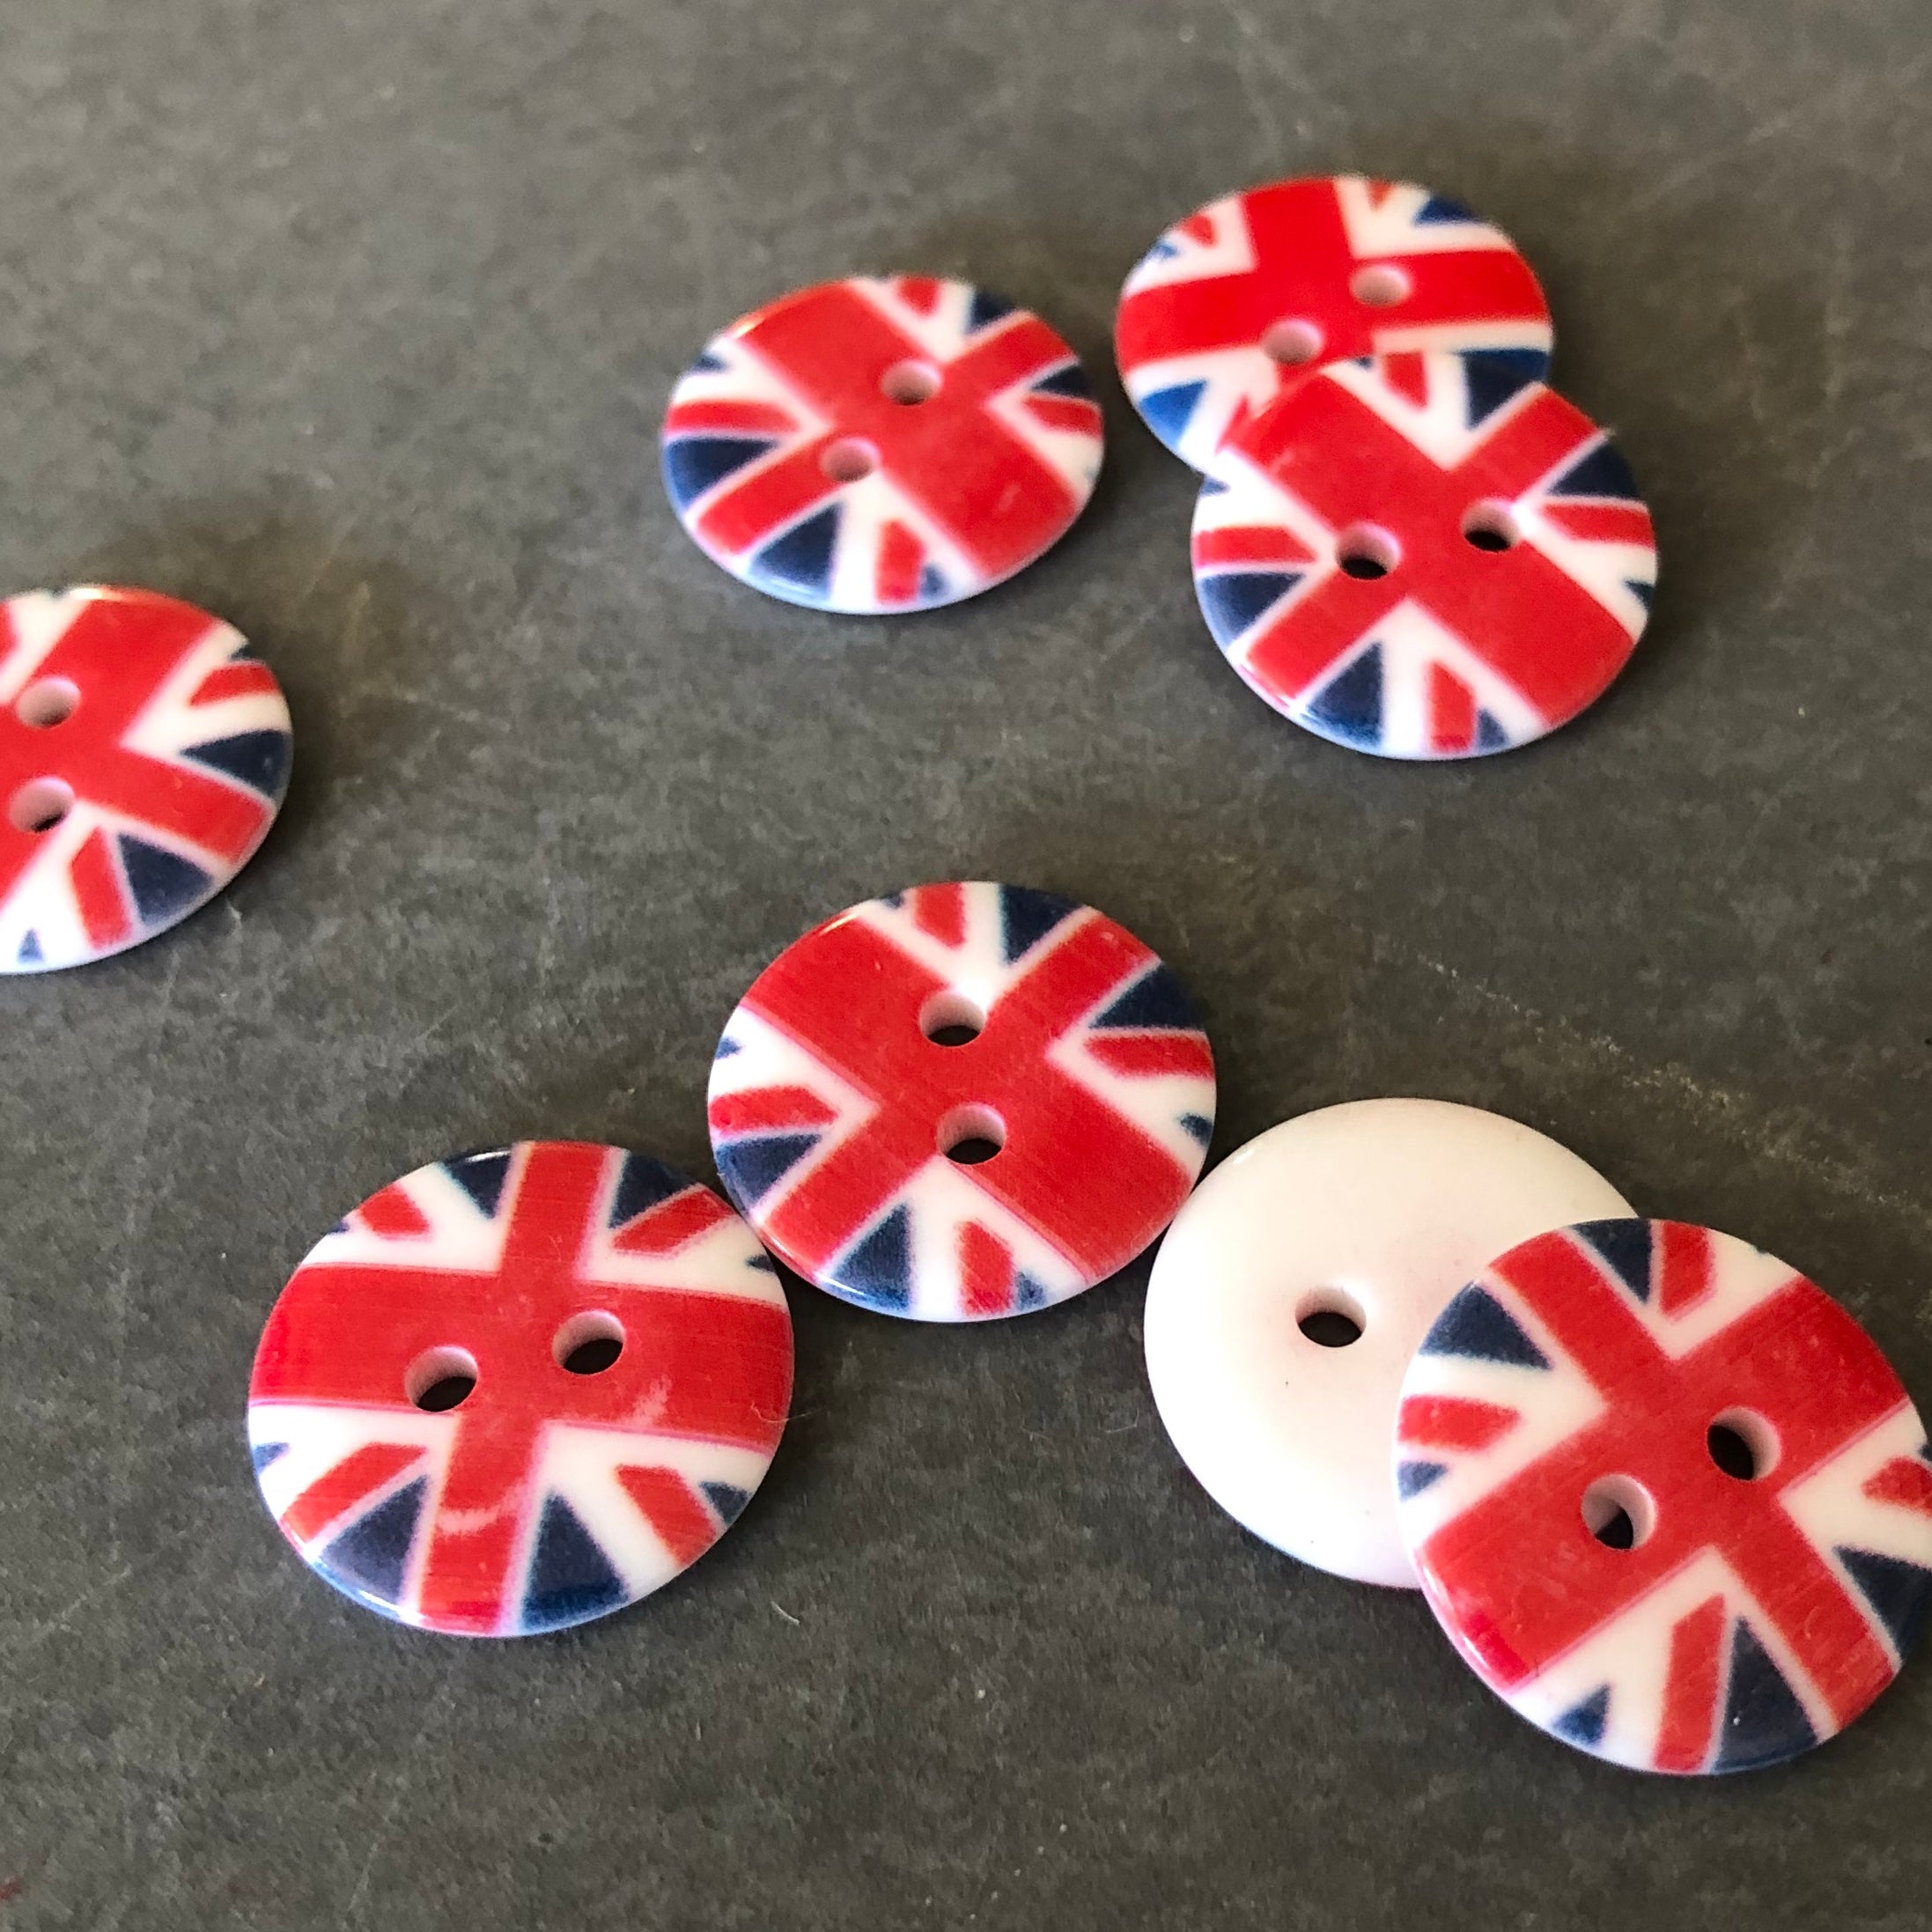 18mm diameter Union Jack Buttons